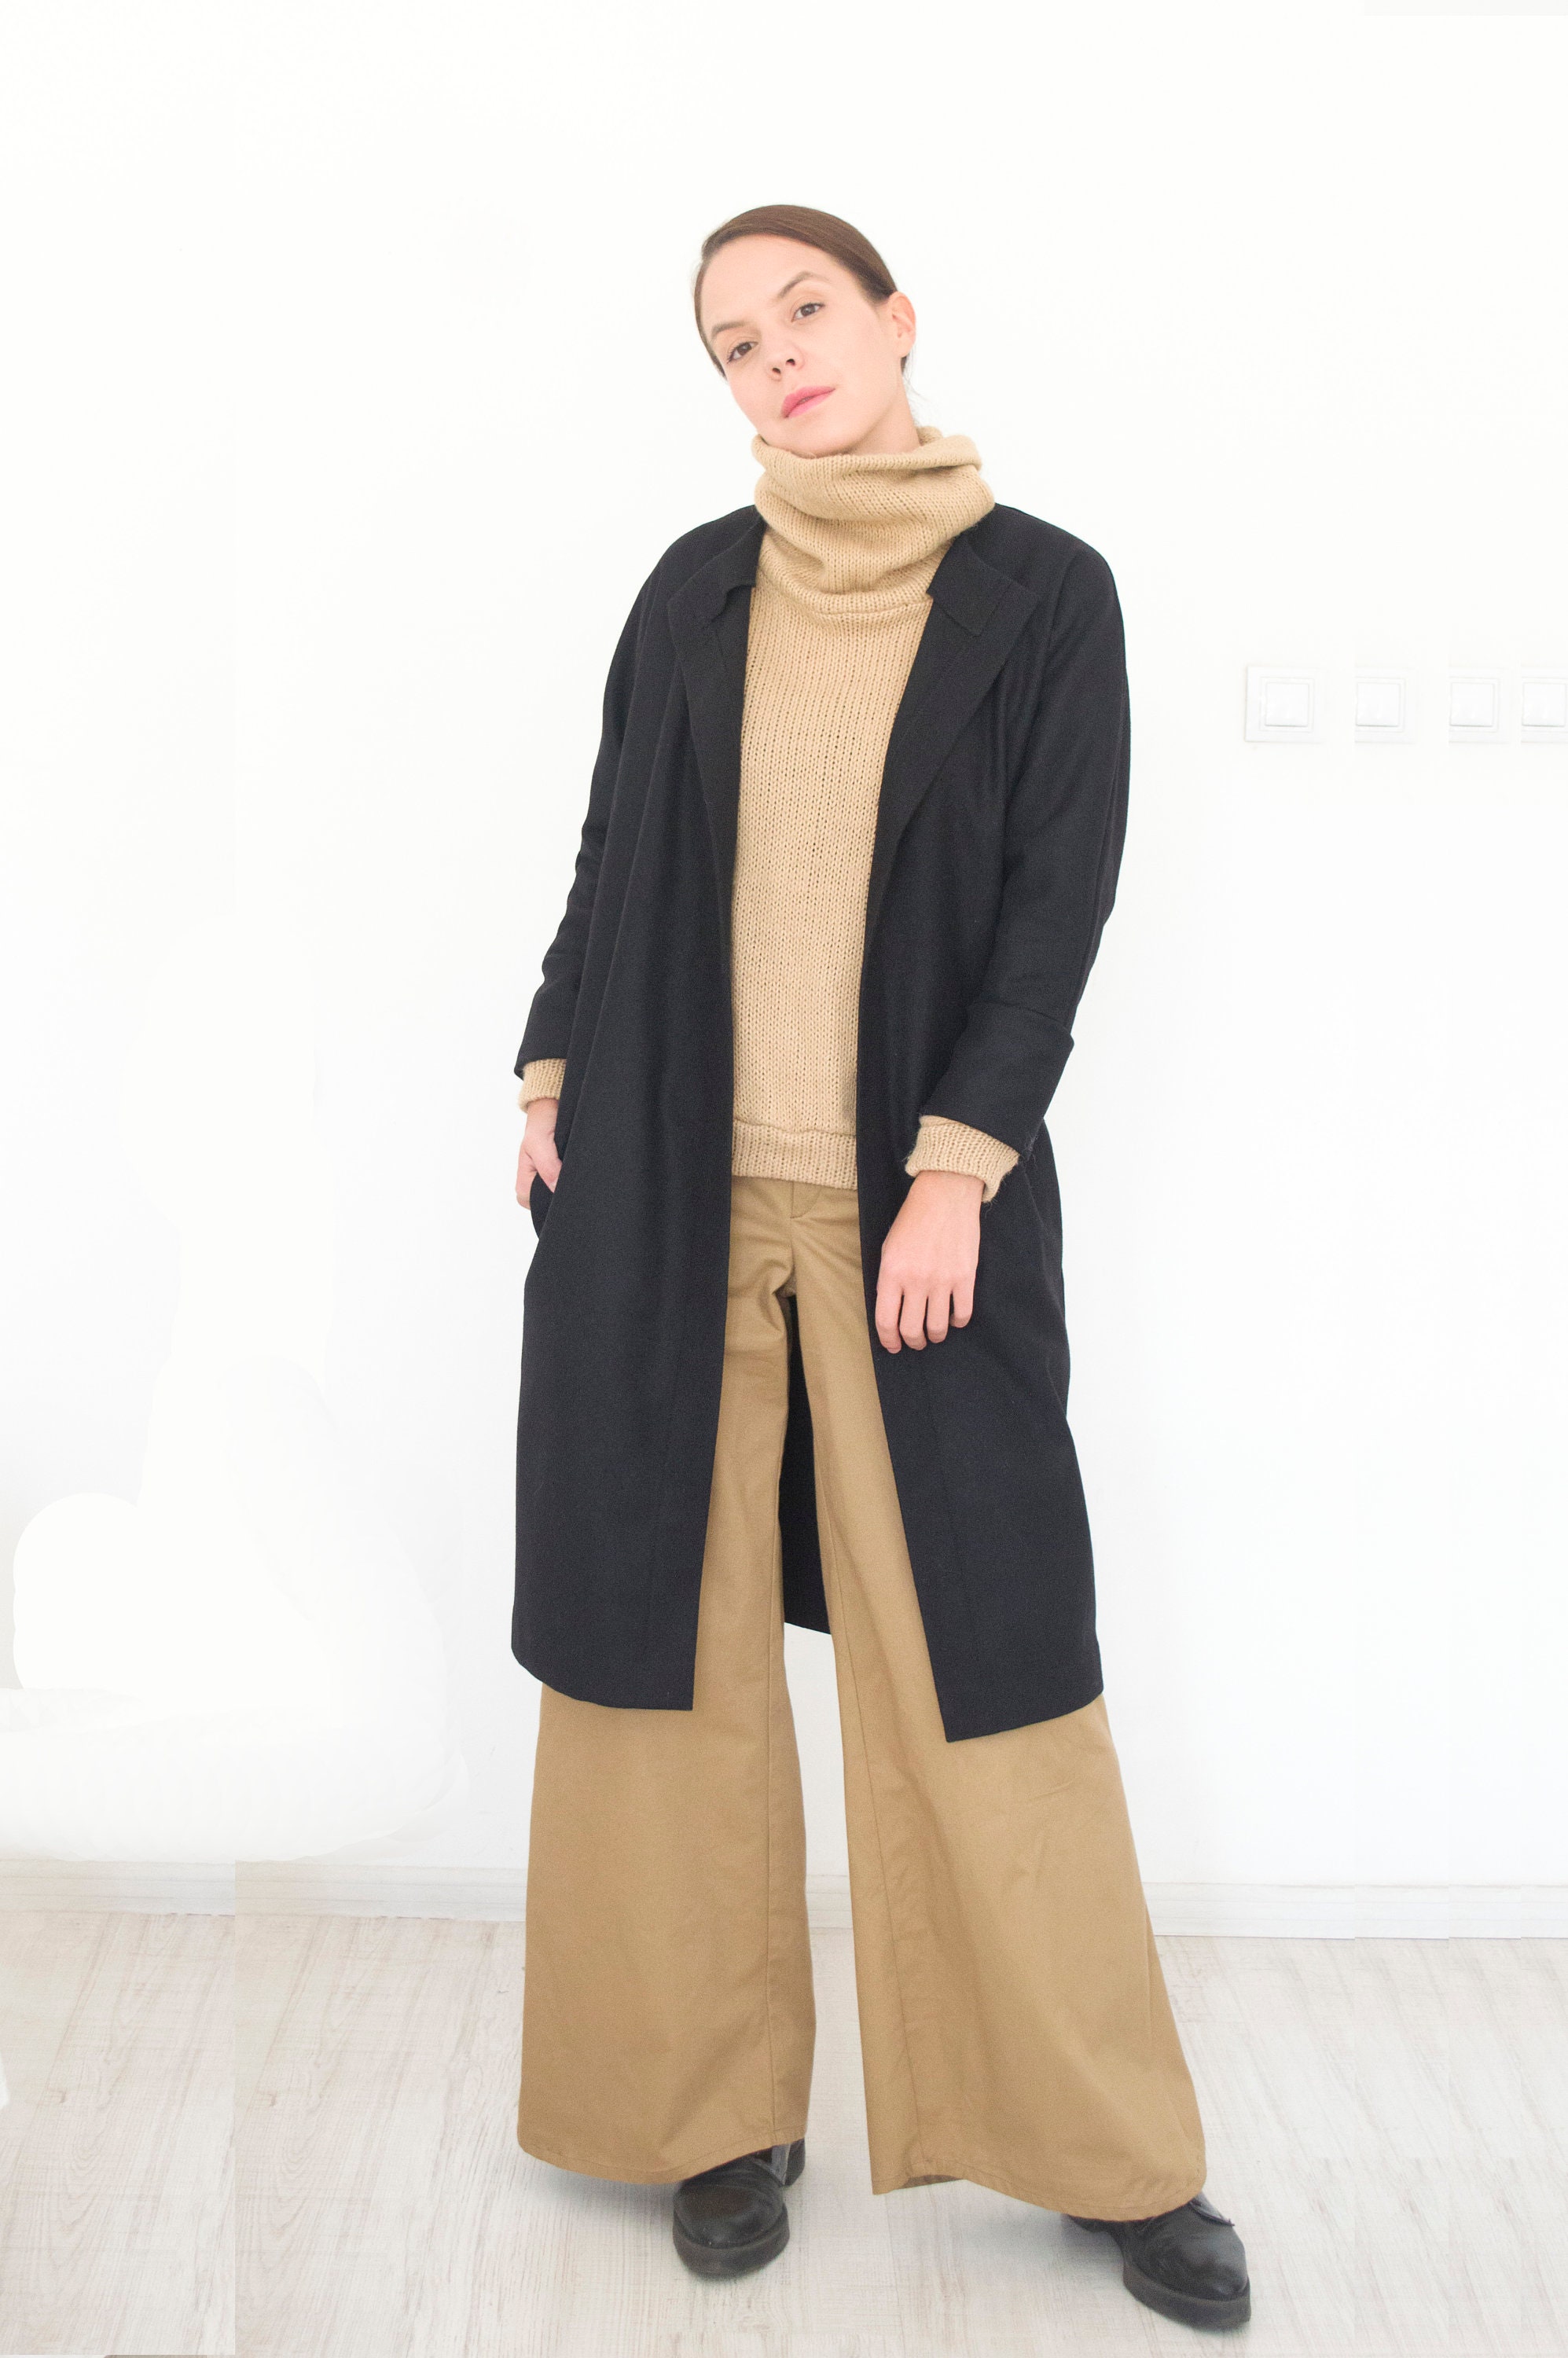 Wool Coat WomenWool DressTrench CoatTrench Coat WomanCoat | Etsy